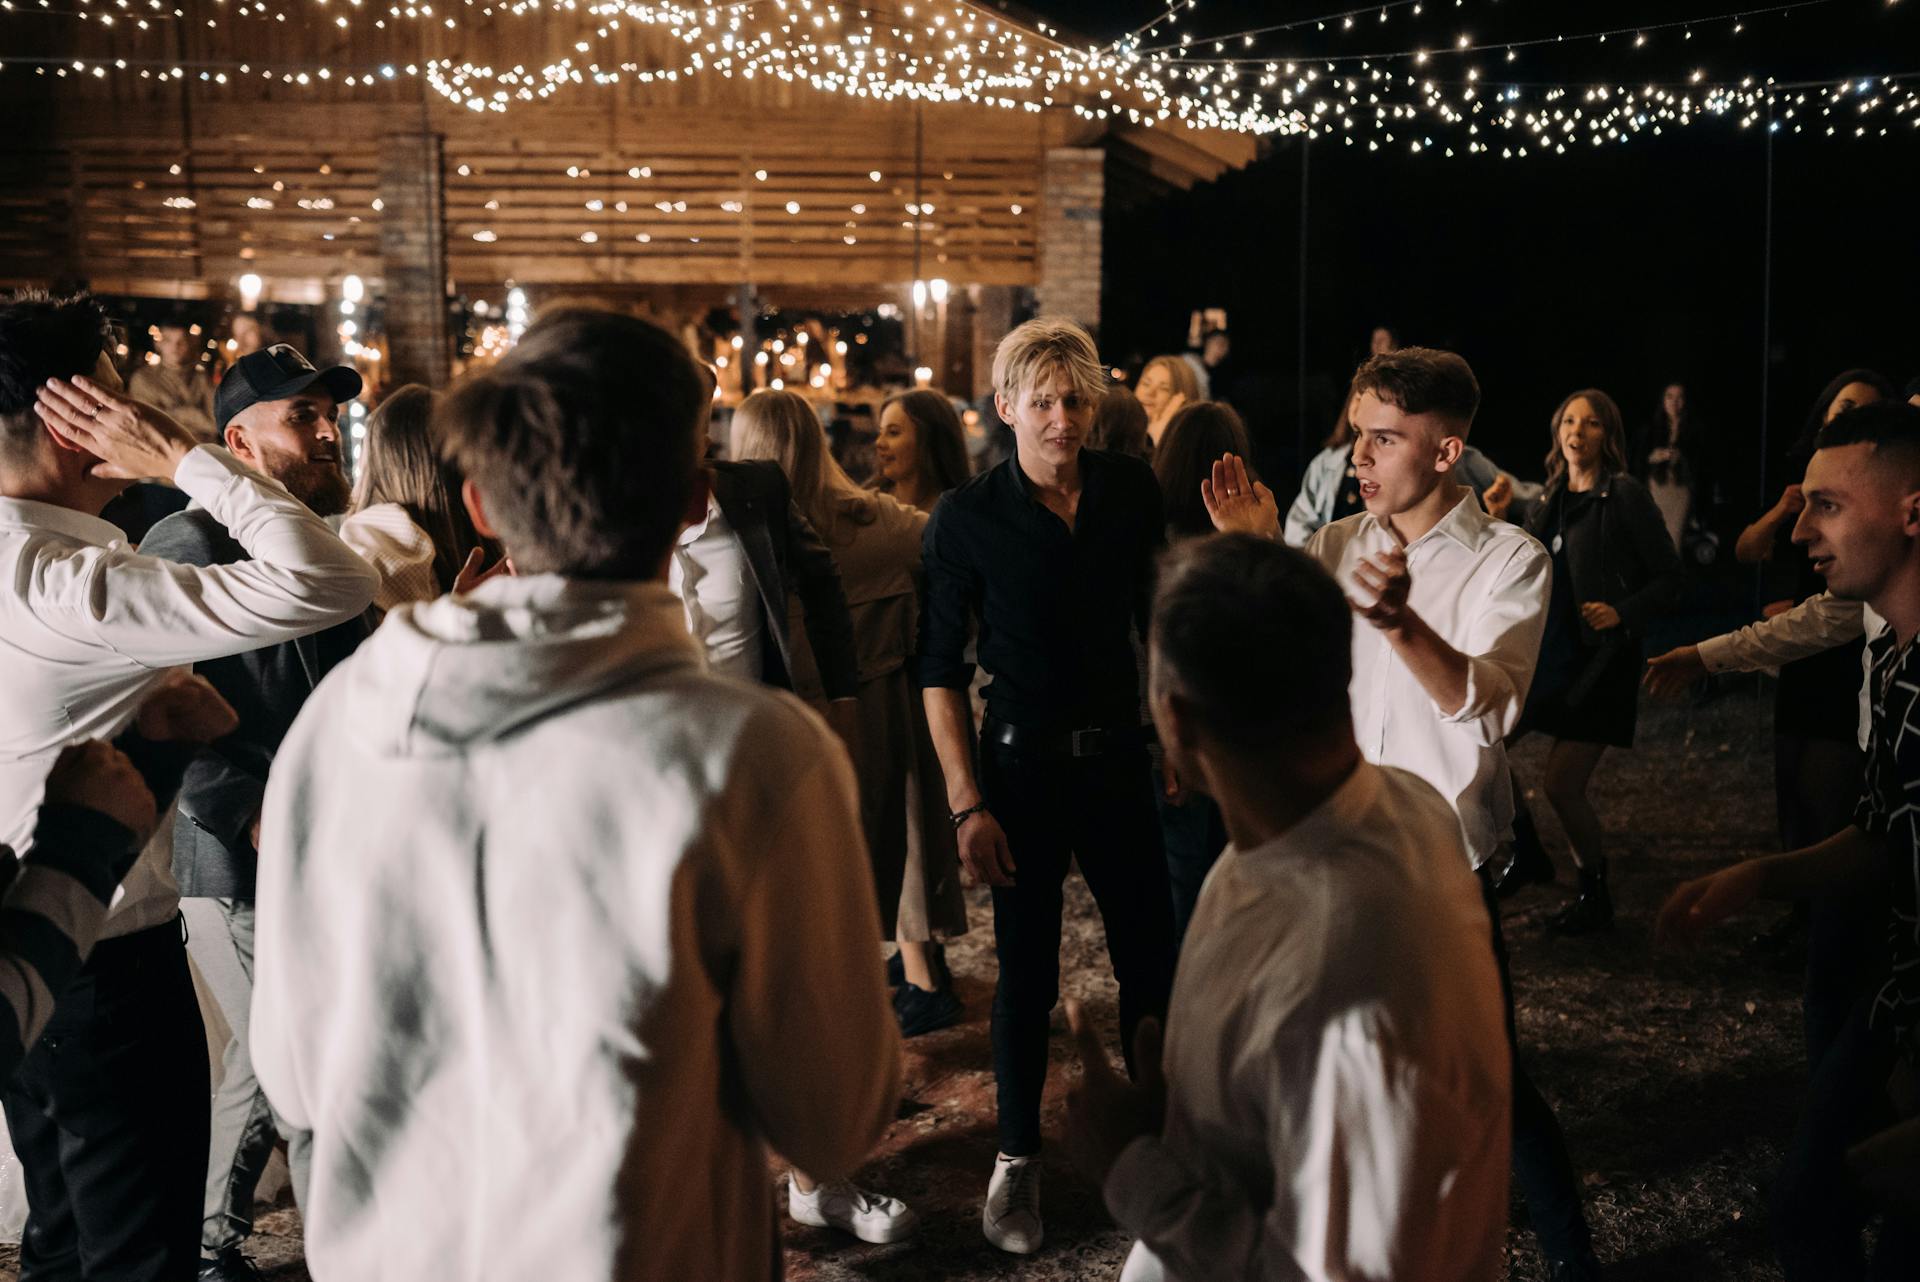 Tanzende Gäste auf einer Hochzeitsfeier | Quelle: Pexels